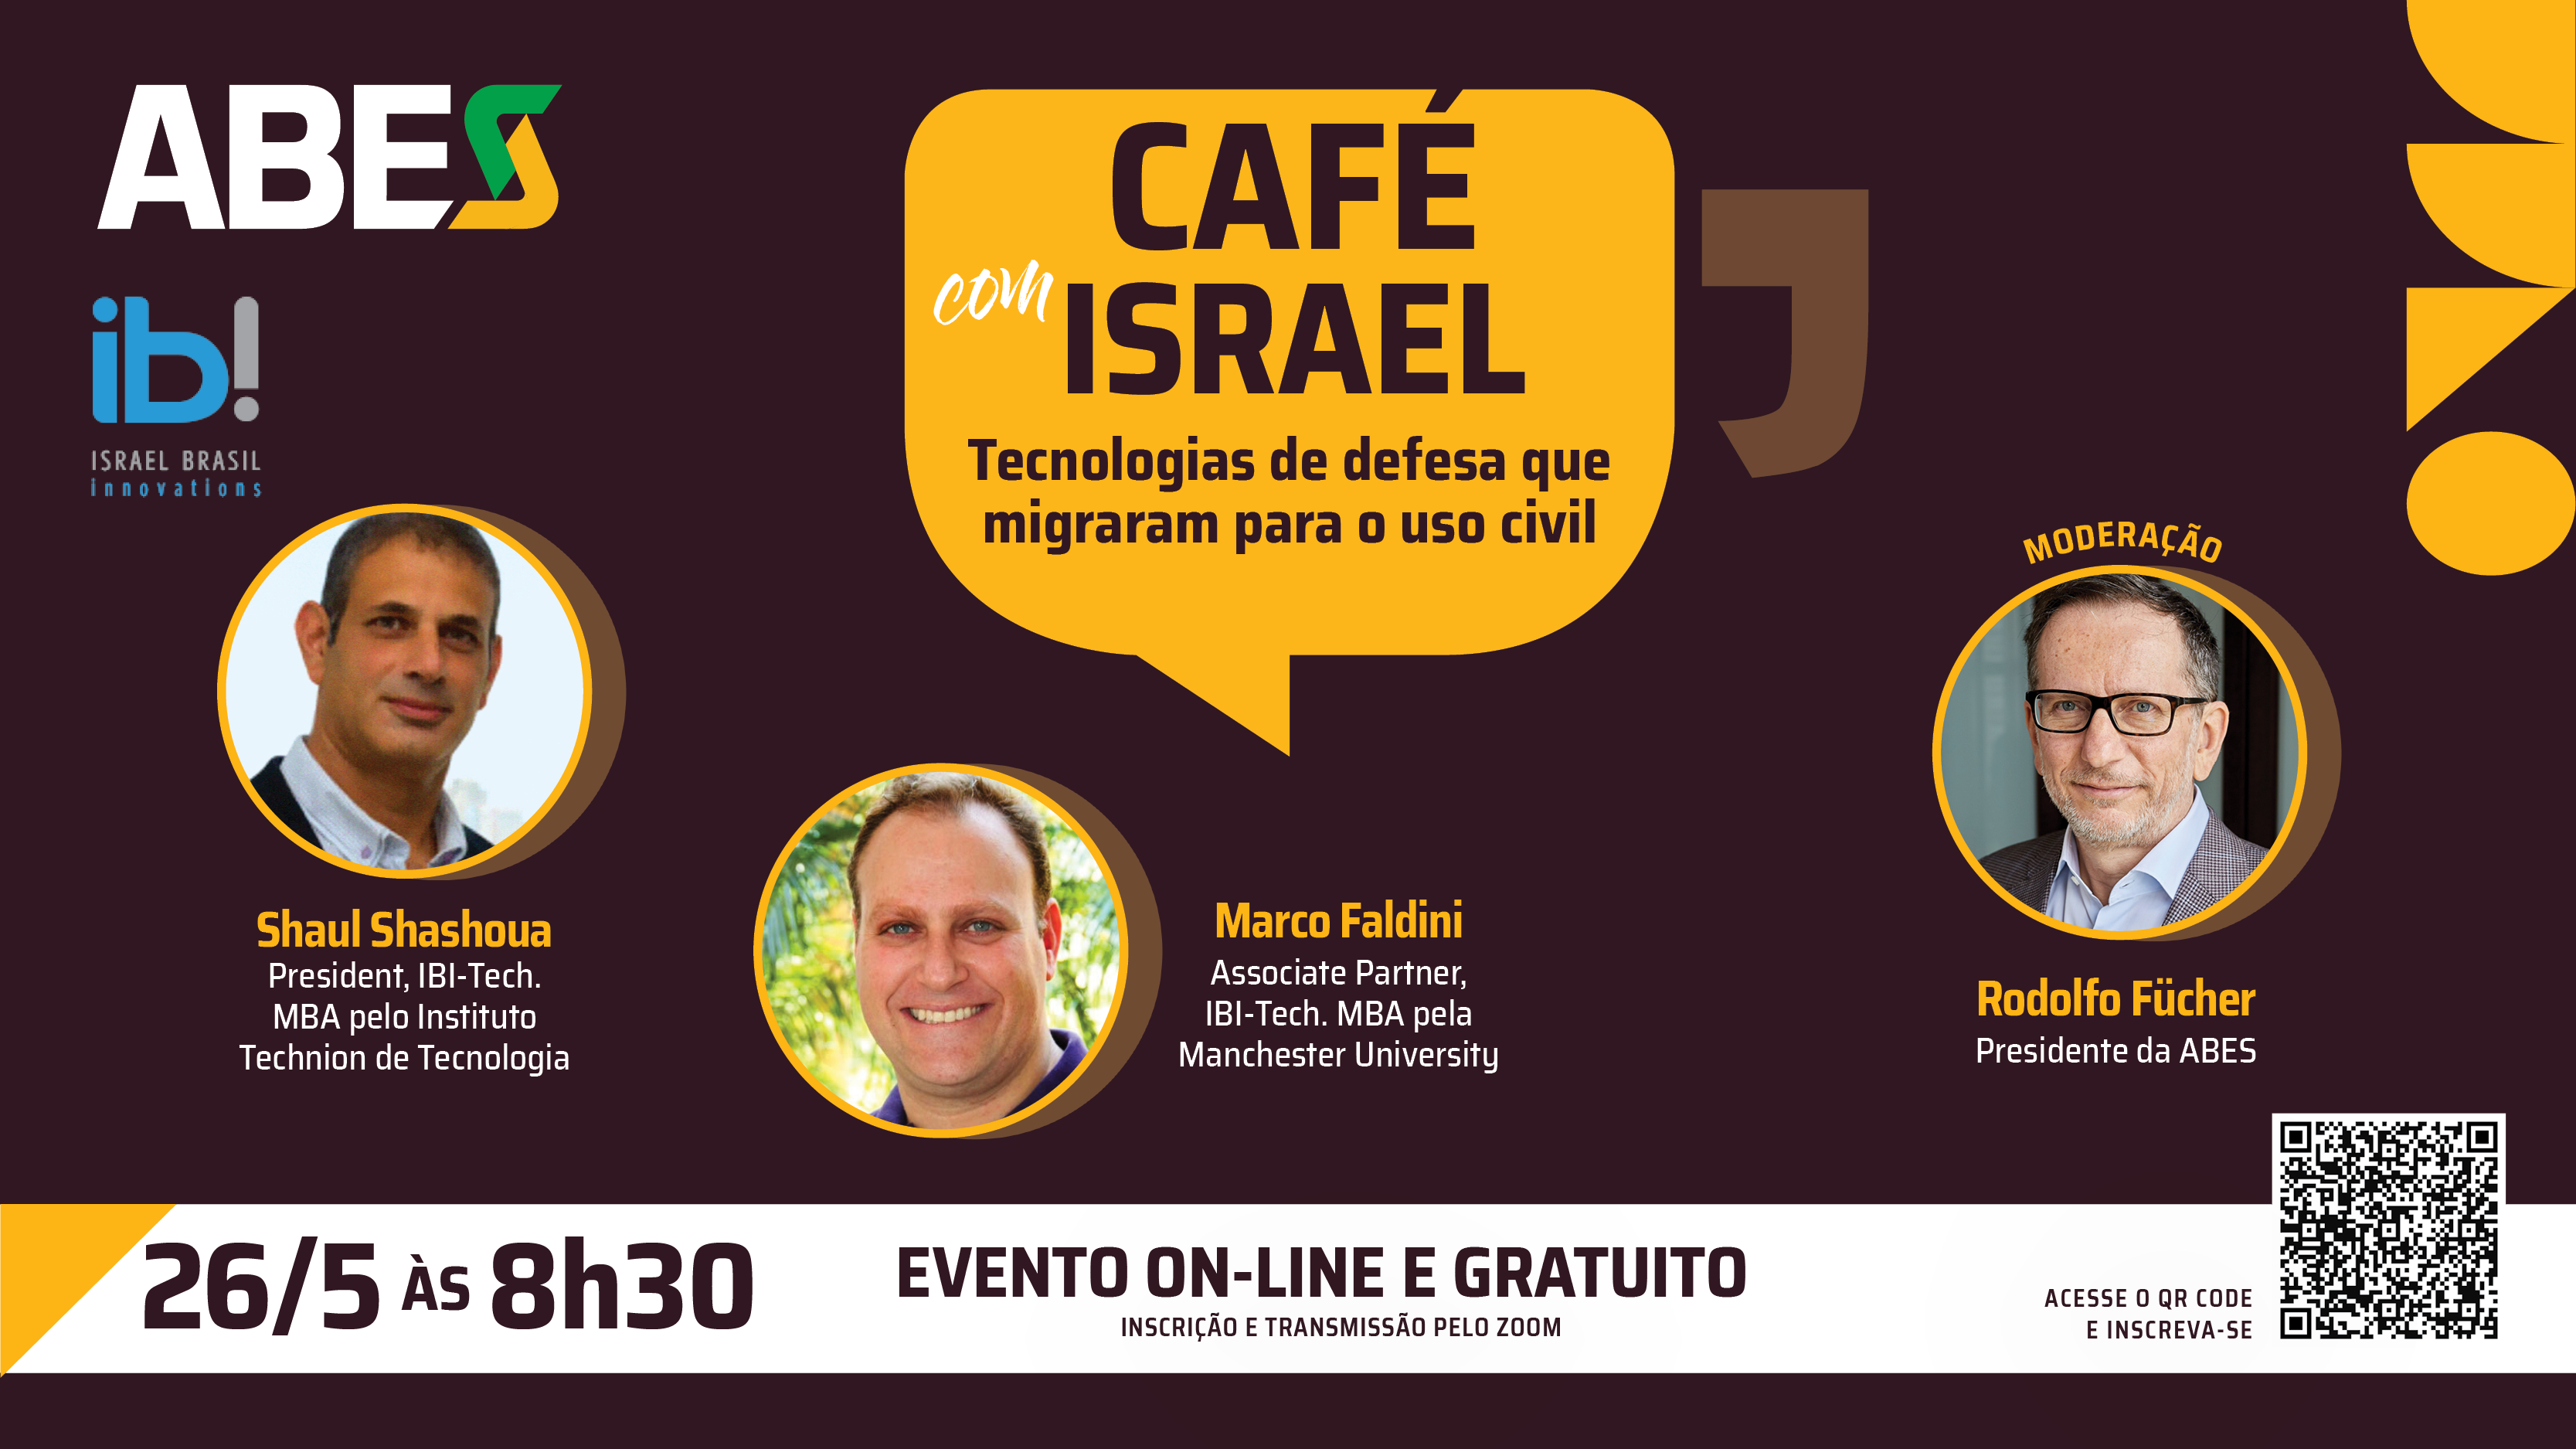 ABES e IBI-Tech promovem terceiro encontro da série Café com Israel para falar sobre tecnologias de defesa para o uso civil